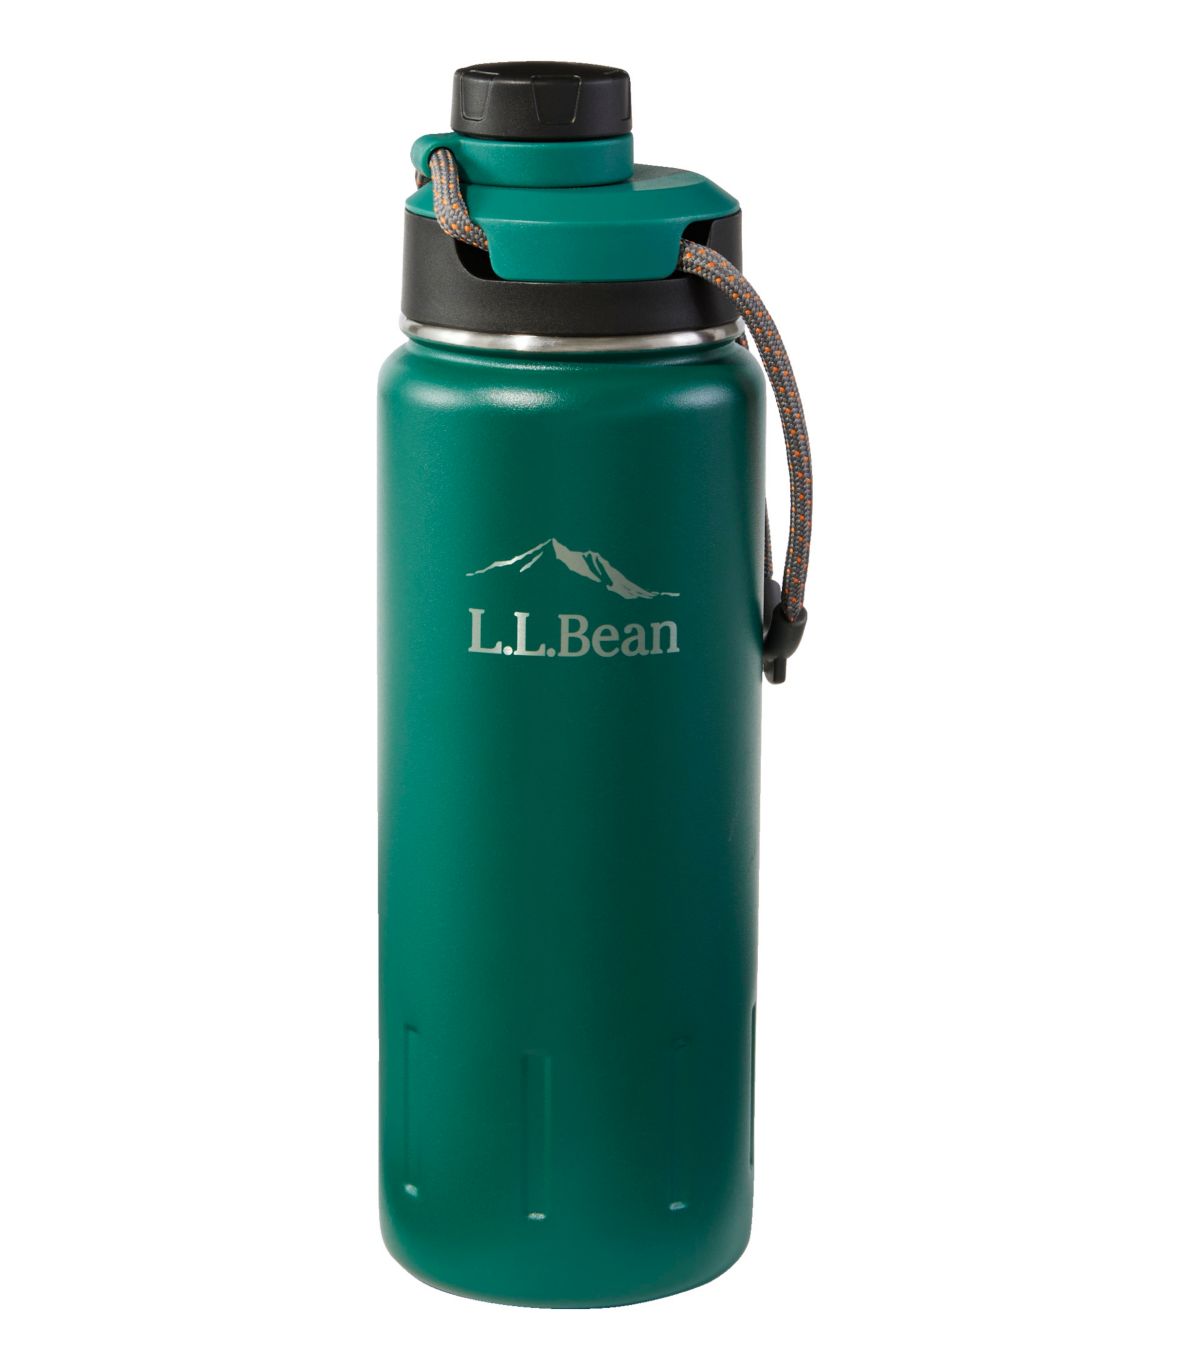 L.L.Bean Insulated Bean Canteen Water Bottle